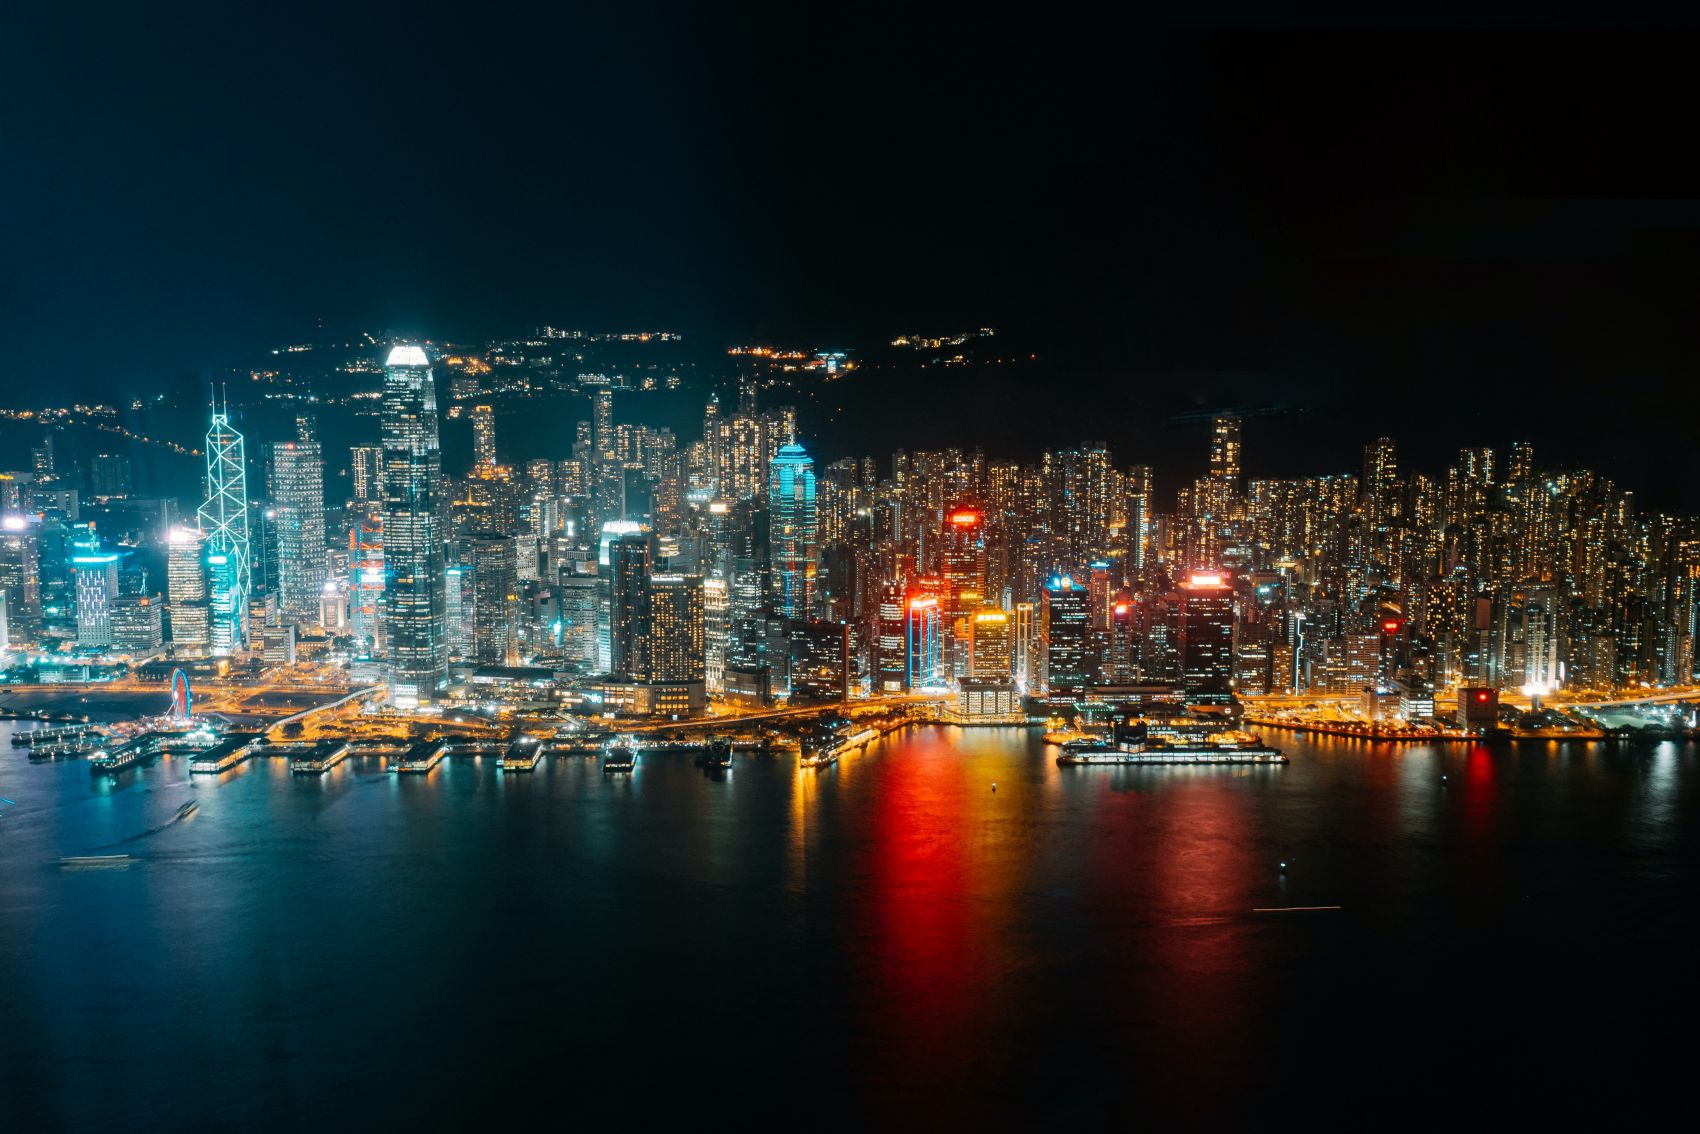 香港夜景图片 欧莱凯设计网 08php Com